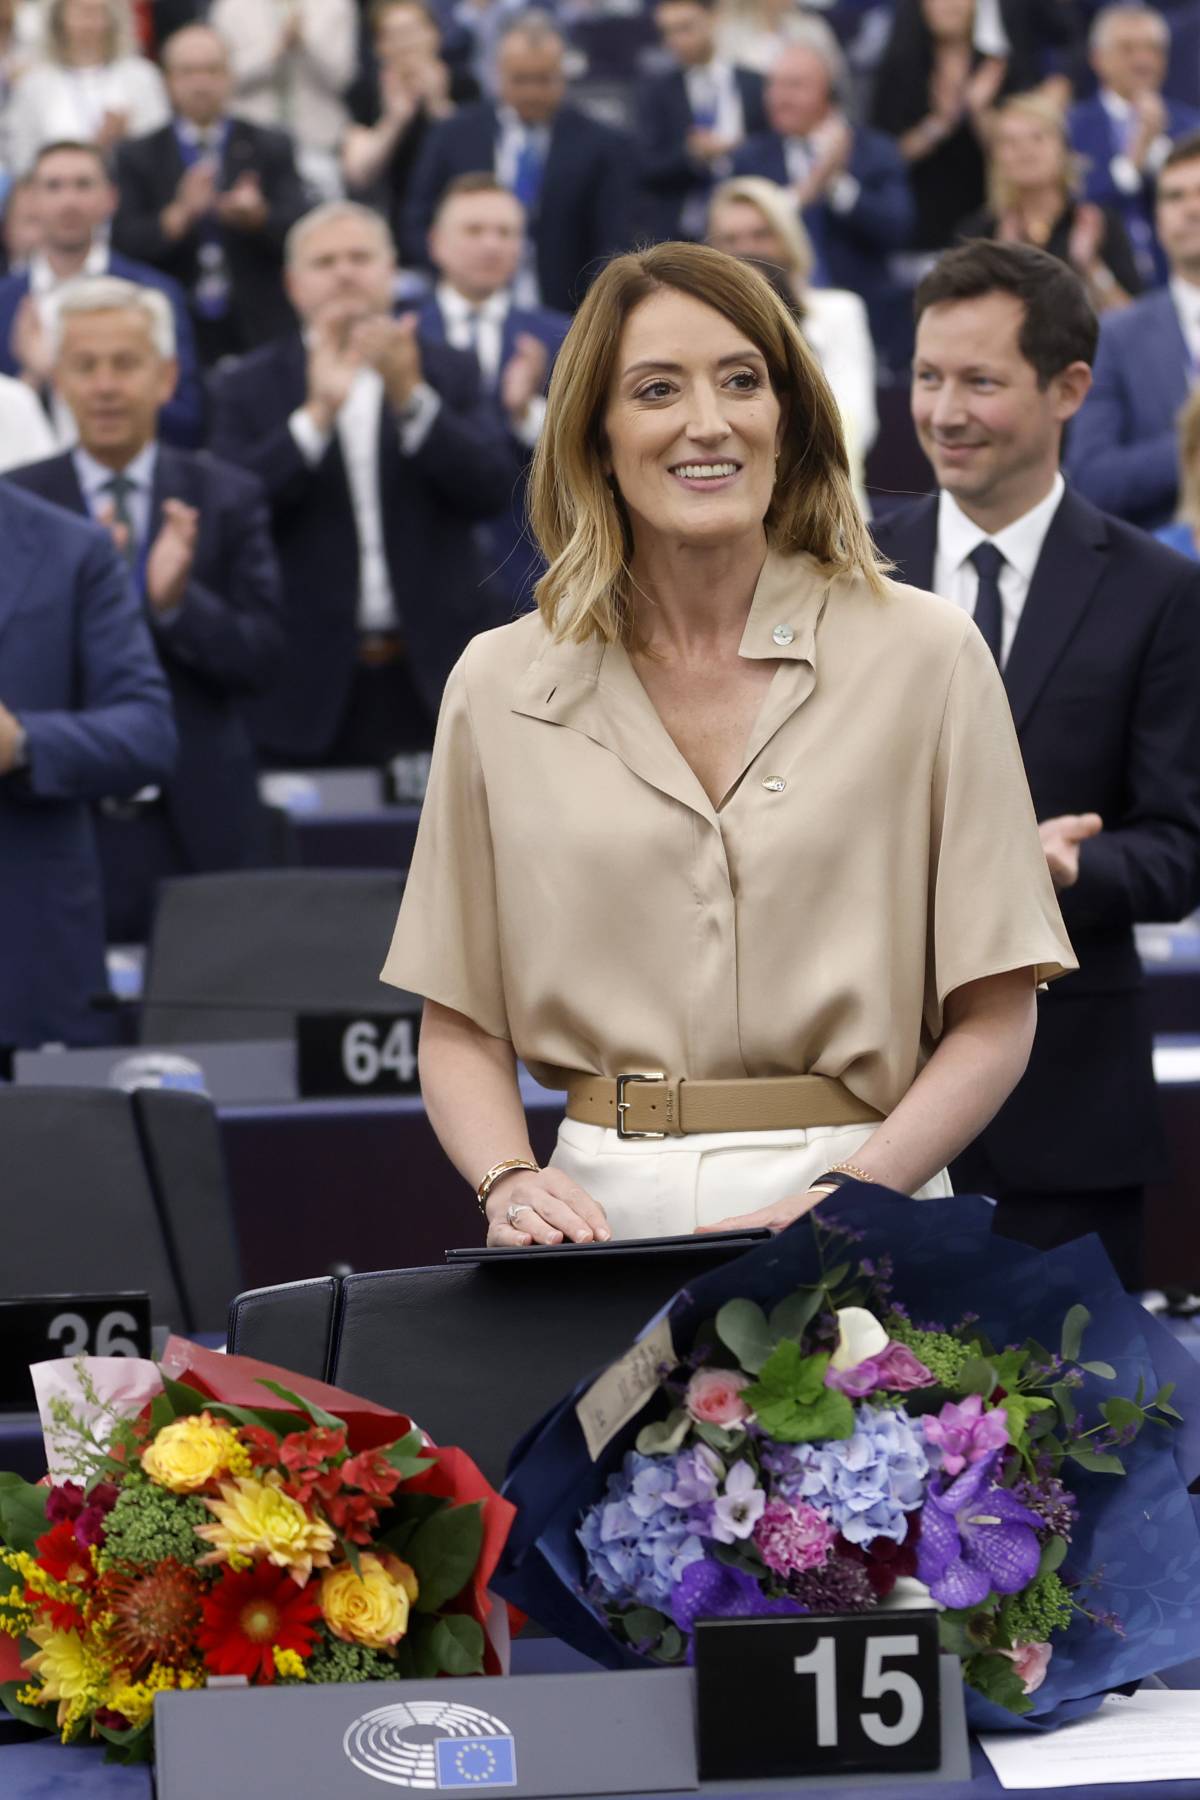 Parlamento Ue, Roberta Metsola riconfermata presidente con una maggioranza record: 562 voti